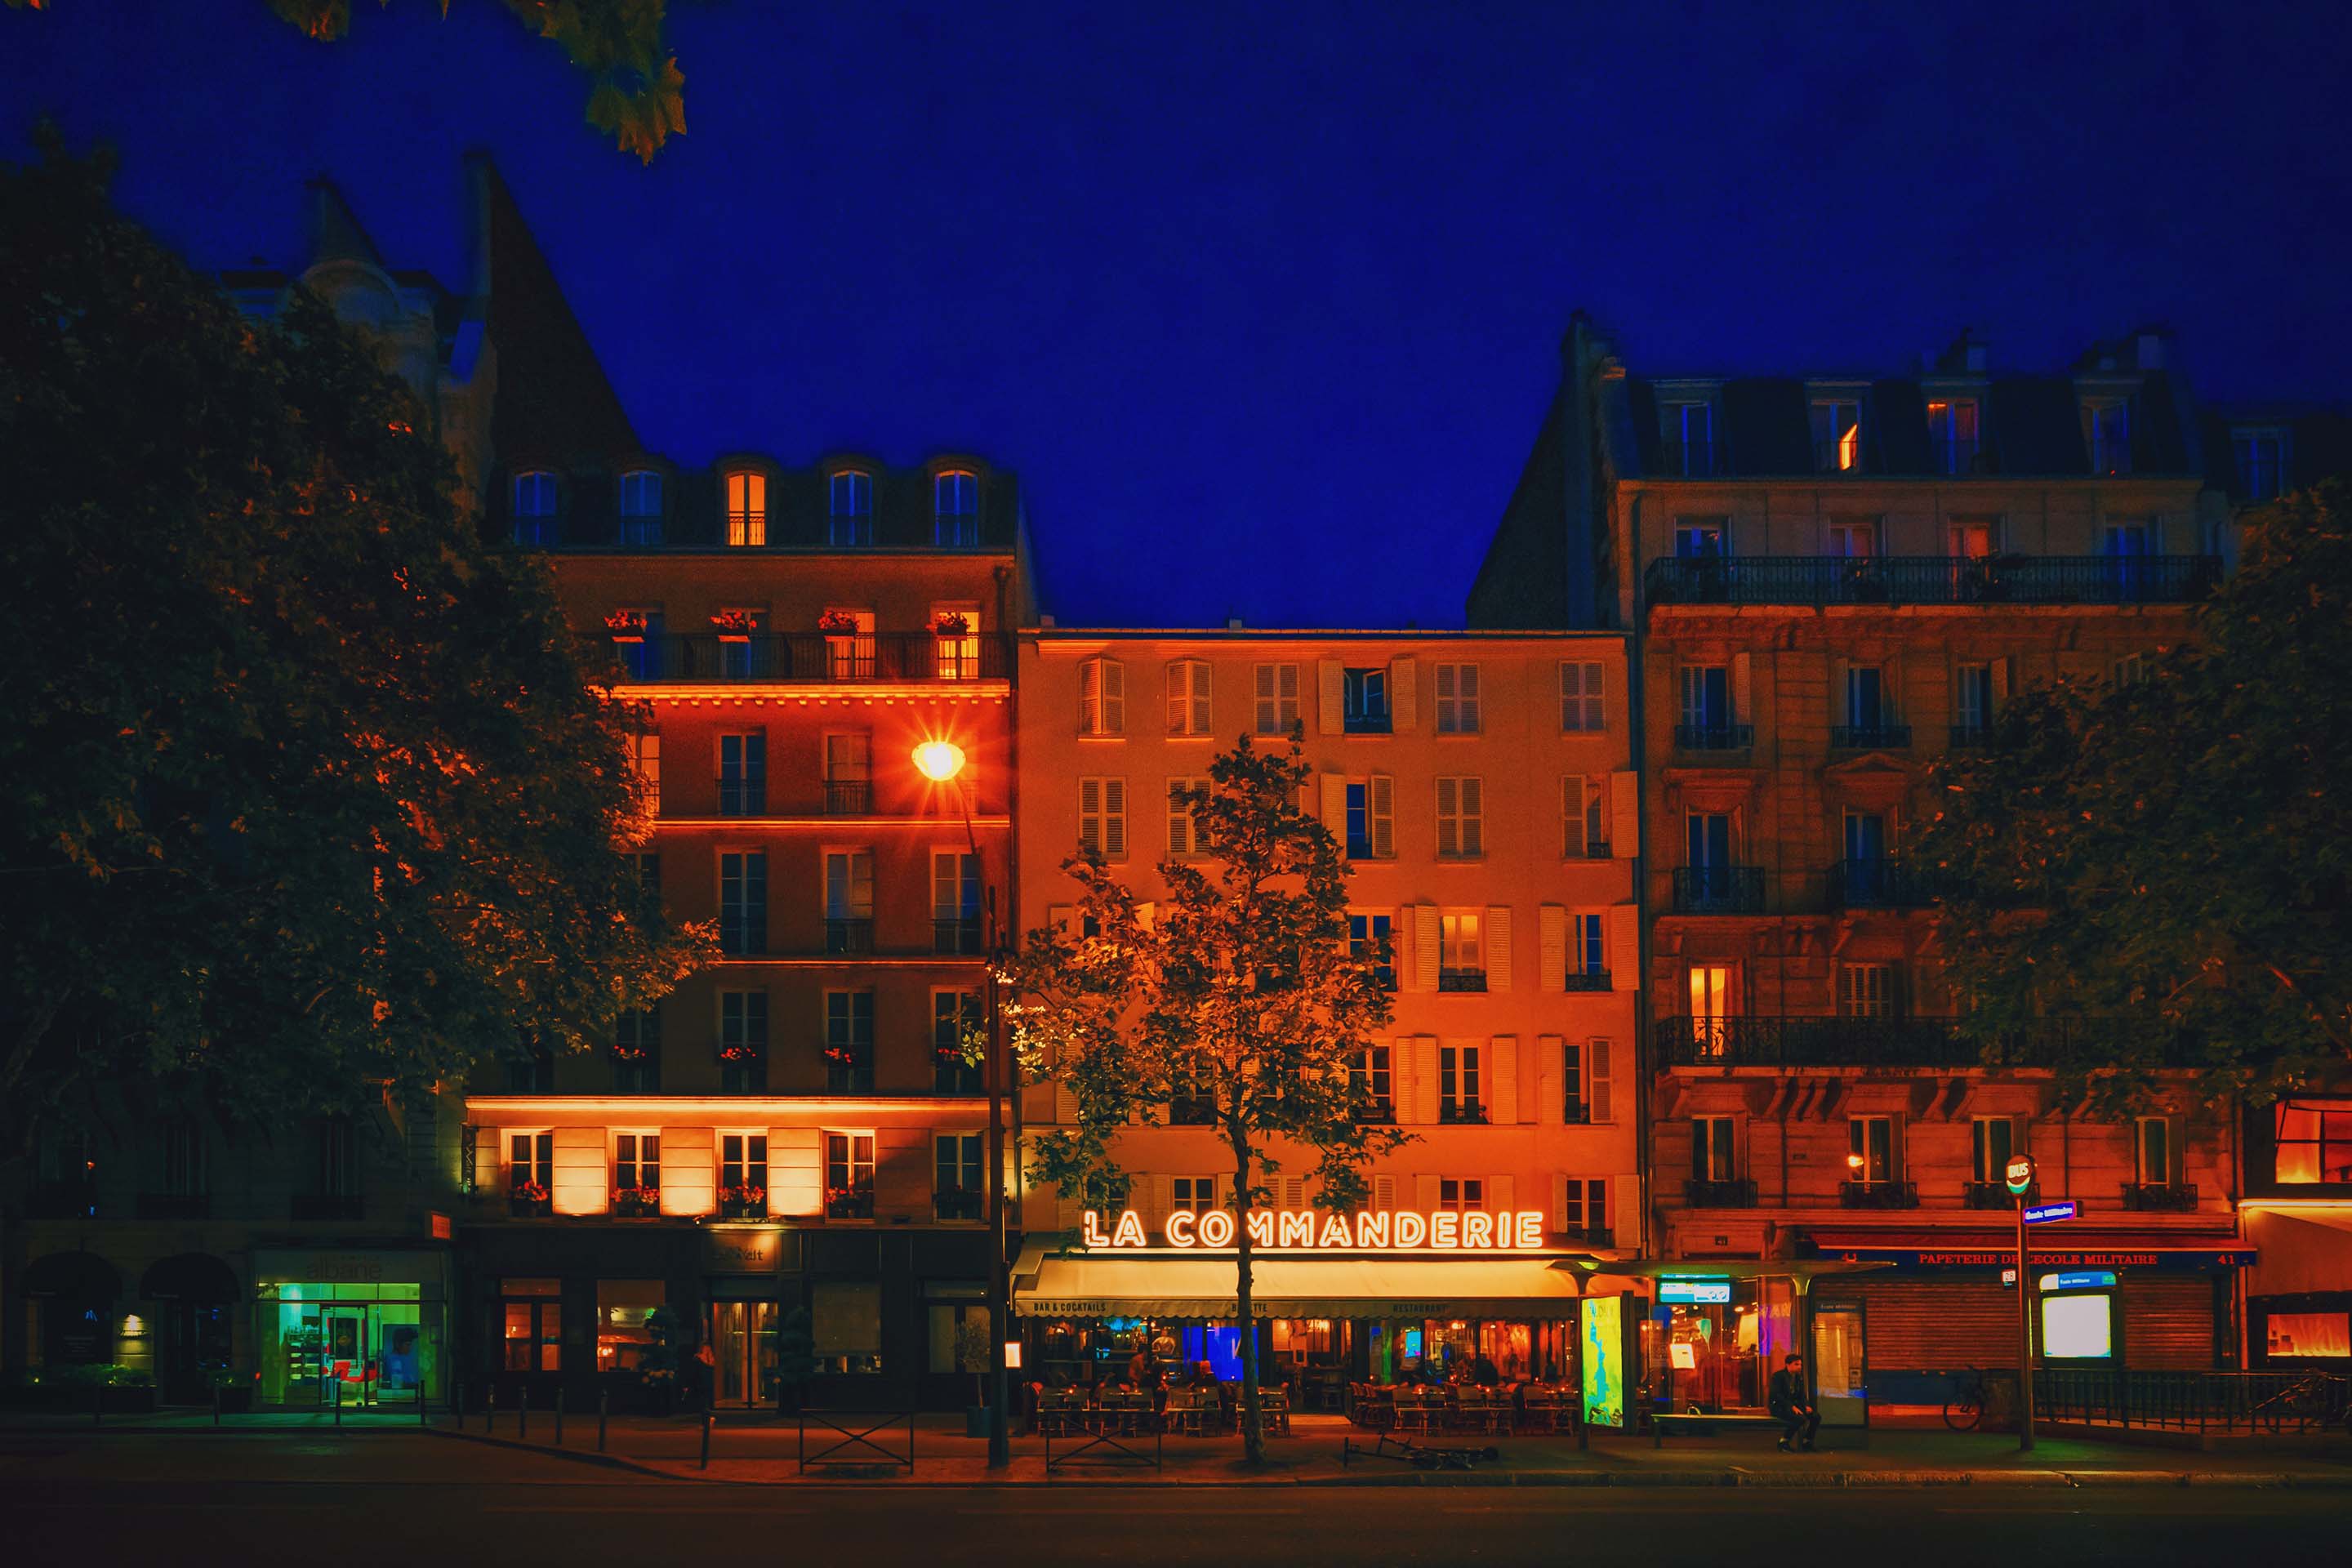 La Commanderie restaurant and street, Paris